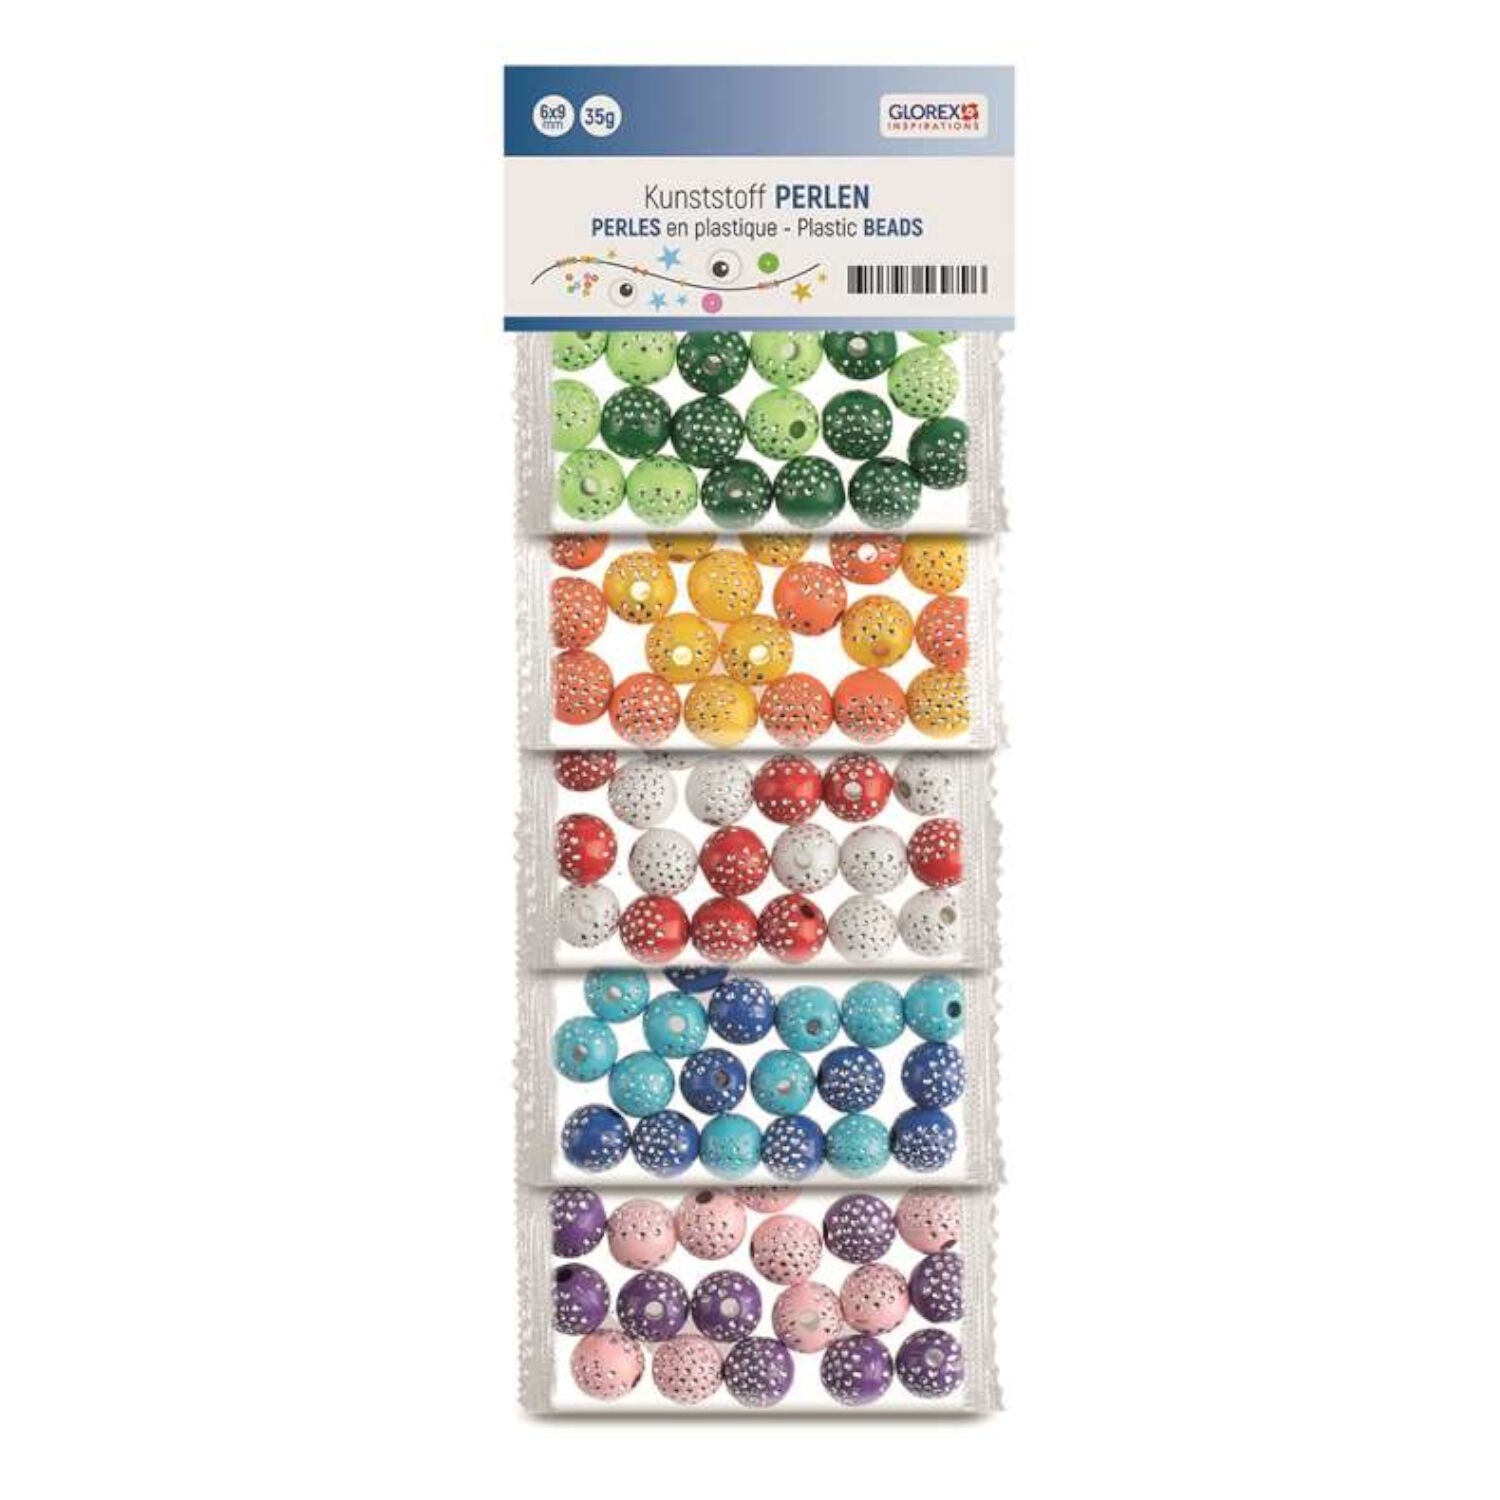 NEU Kunststoffperlen-Mix, 10 mm, 50 g, gepunktet in 5 Farben